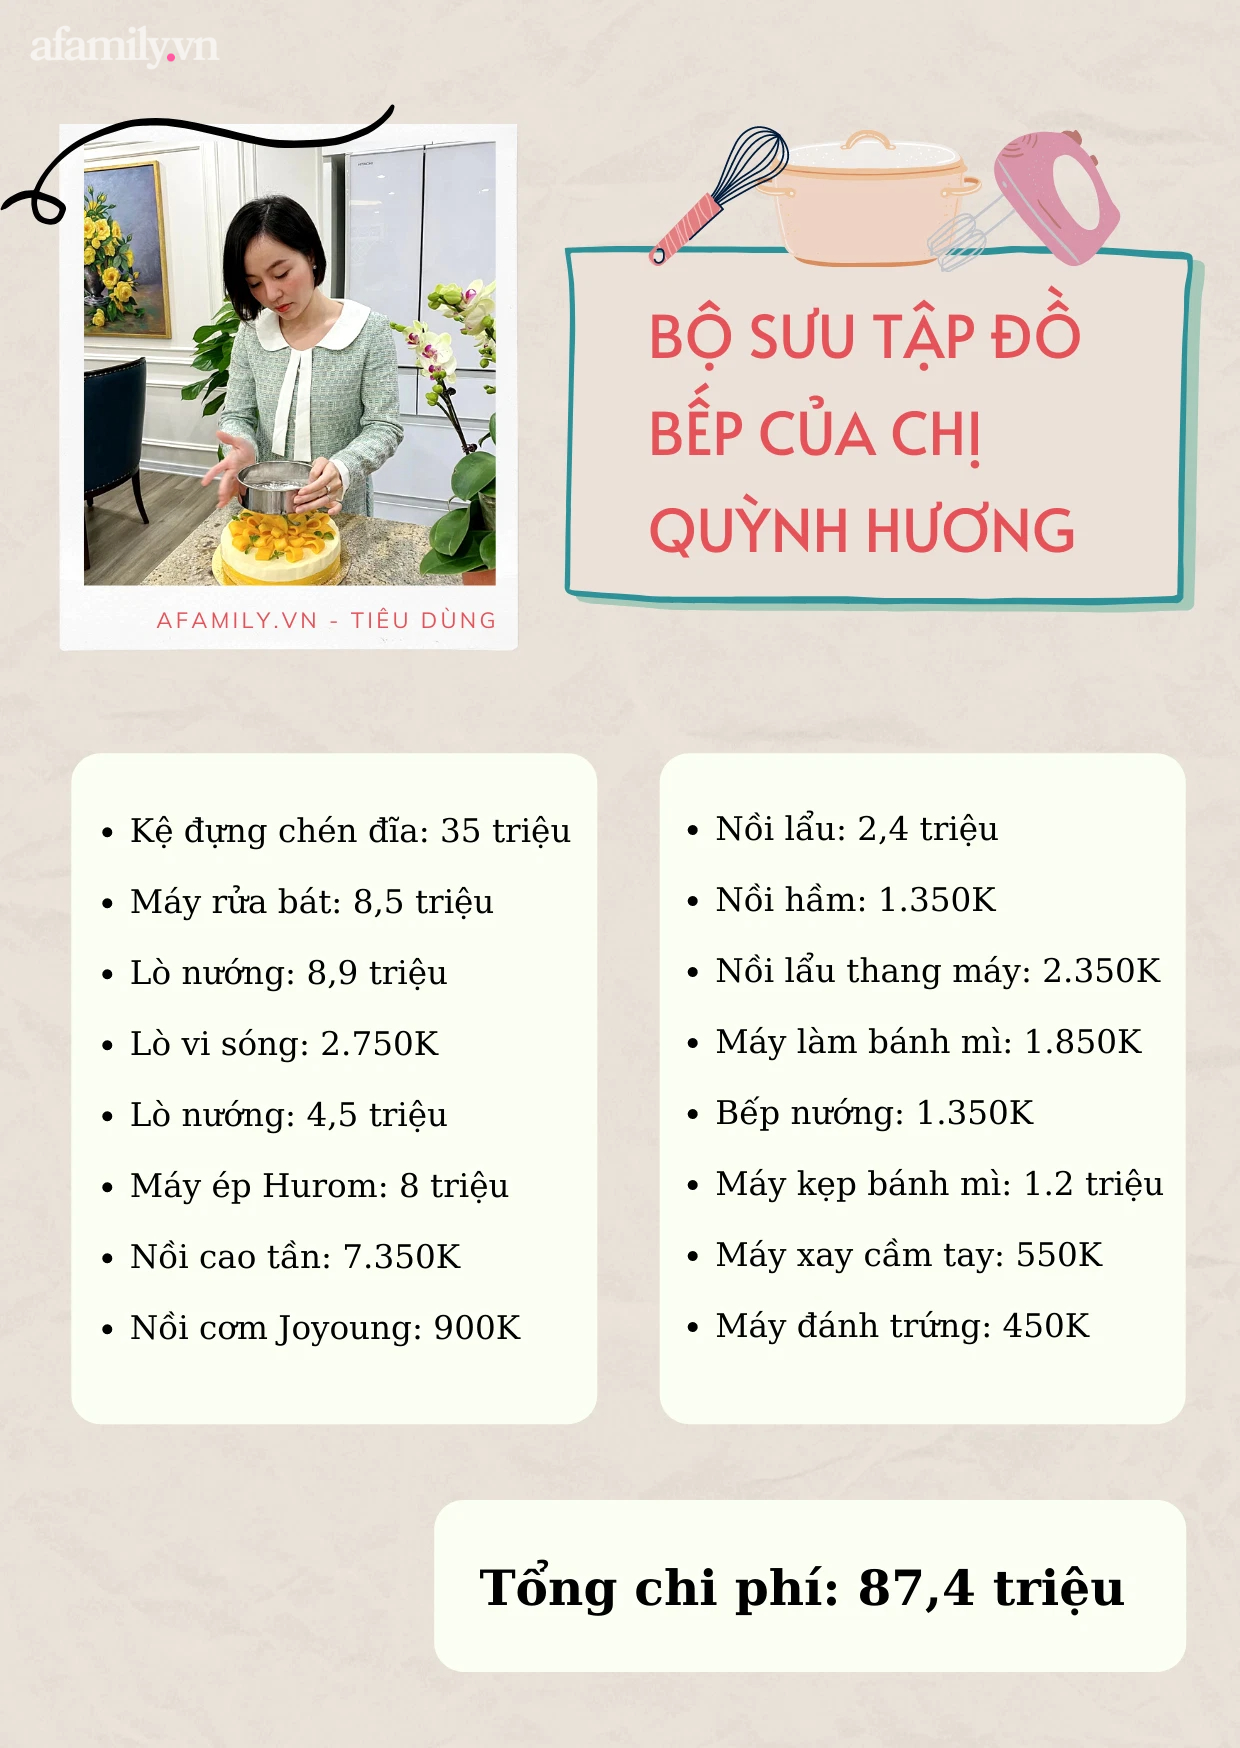 Ngắm bộ sưu tập đồ 13 món đồ bếp hiện đại của mẹ đảm Hà Nội trị giá 87,4 triệu - Ảnh 4.